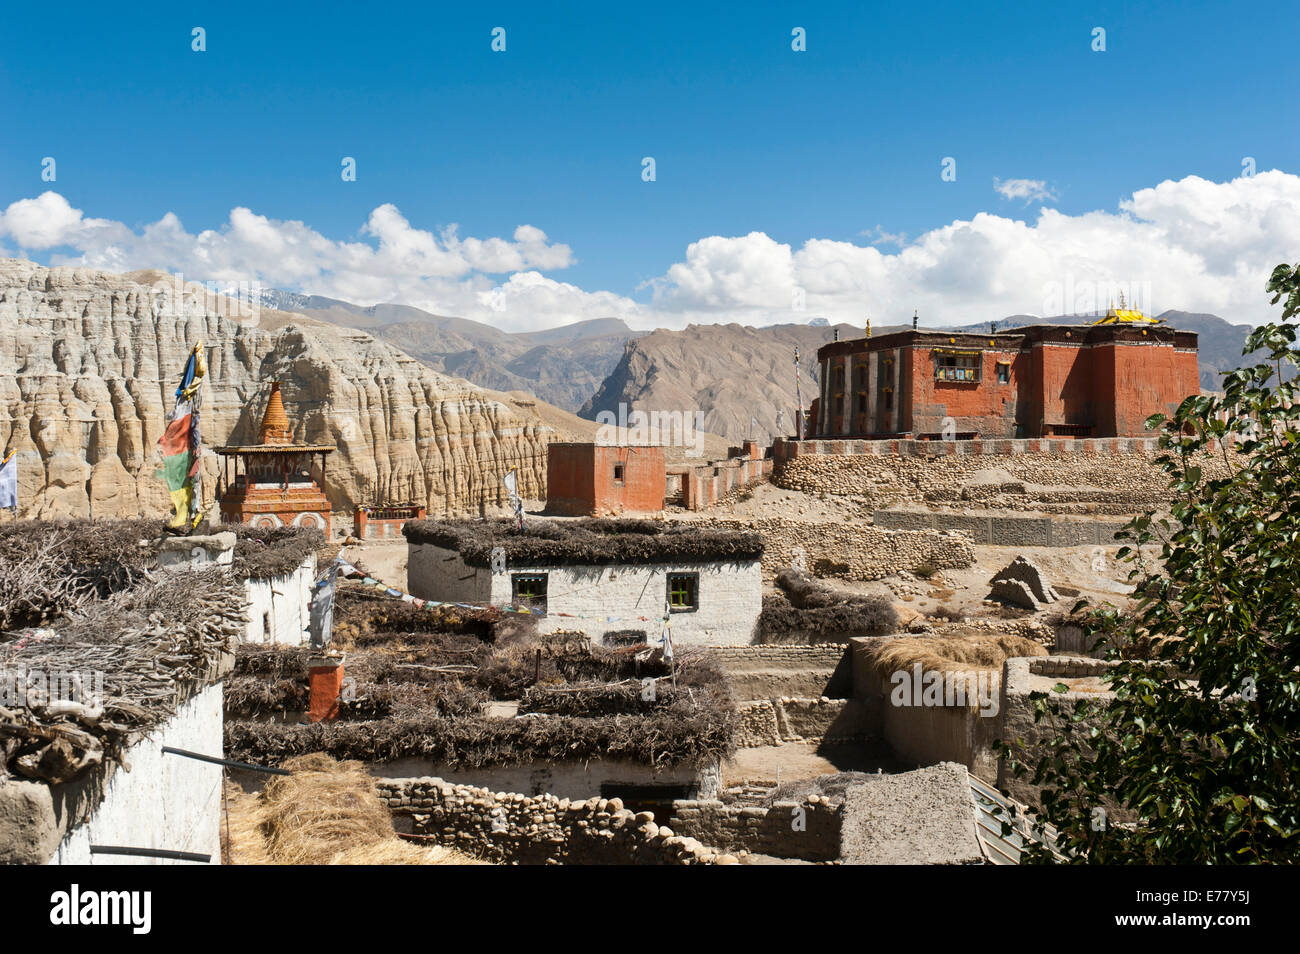 Le bouddhisme tibétain, bâtiment rouge de l'Thubten Shedrup Dargyeling, monastère Sakya secte, Charang, Mustang, Népal Banque D'Images